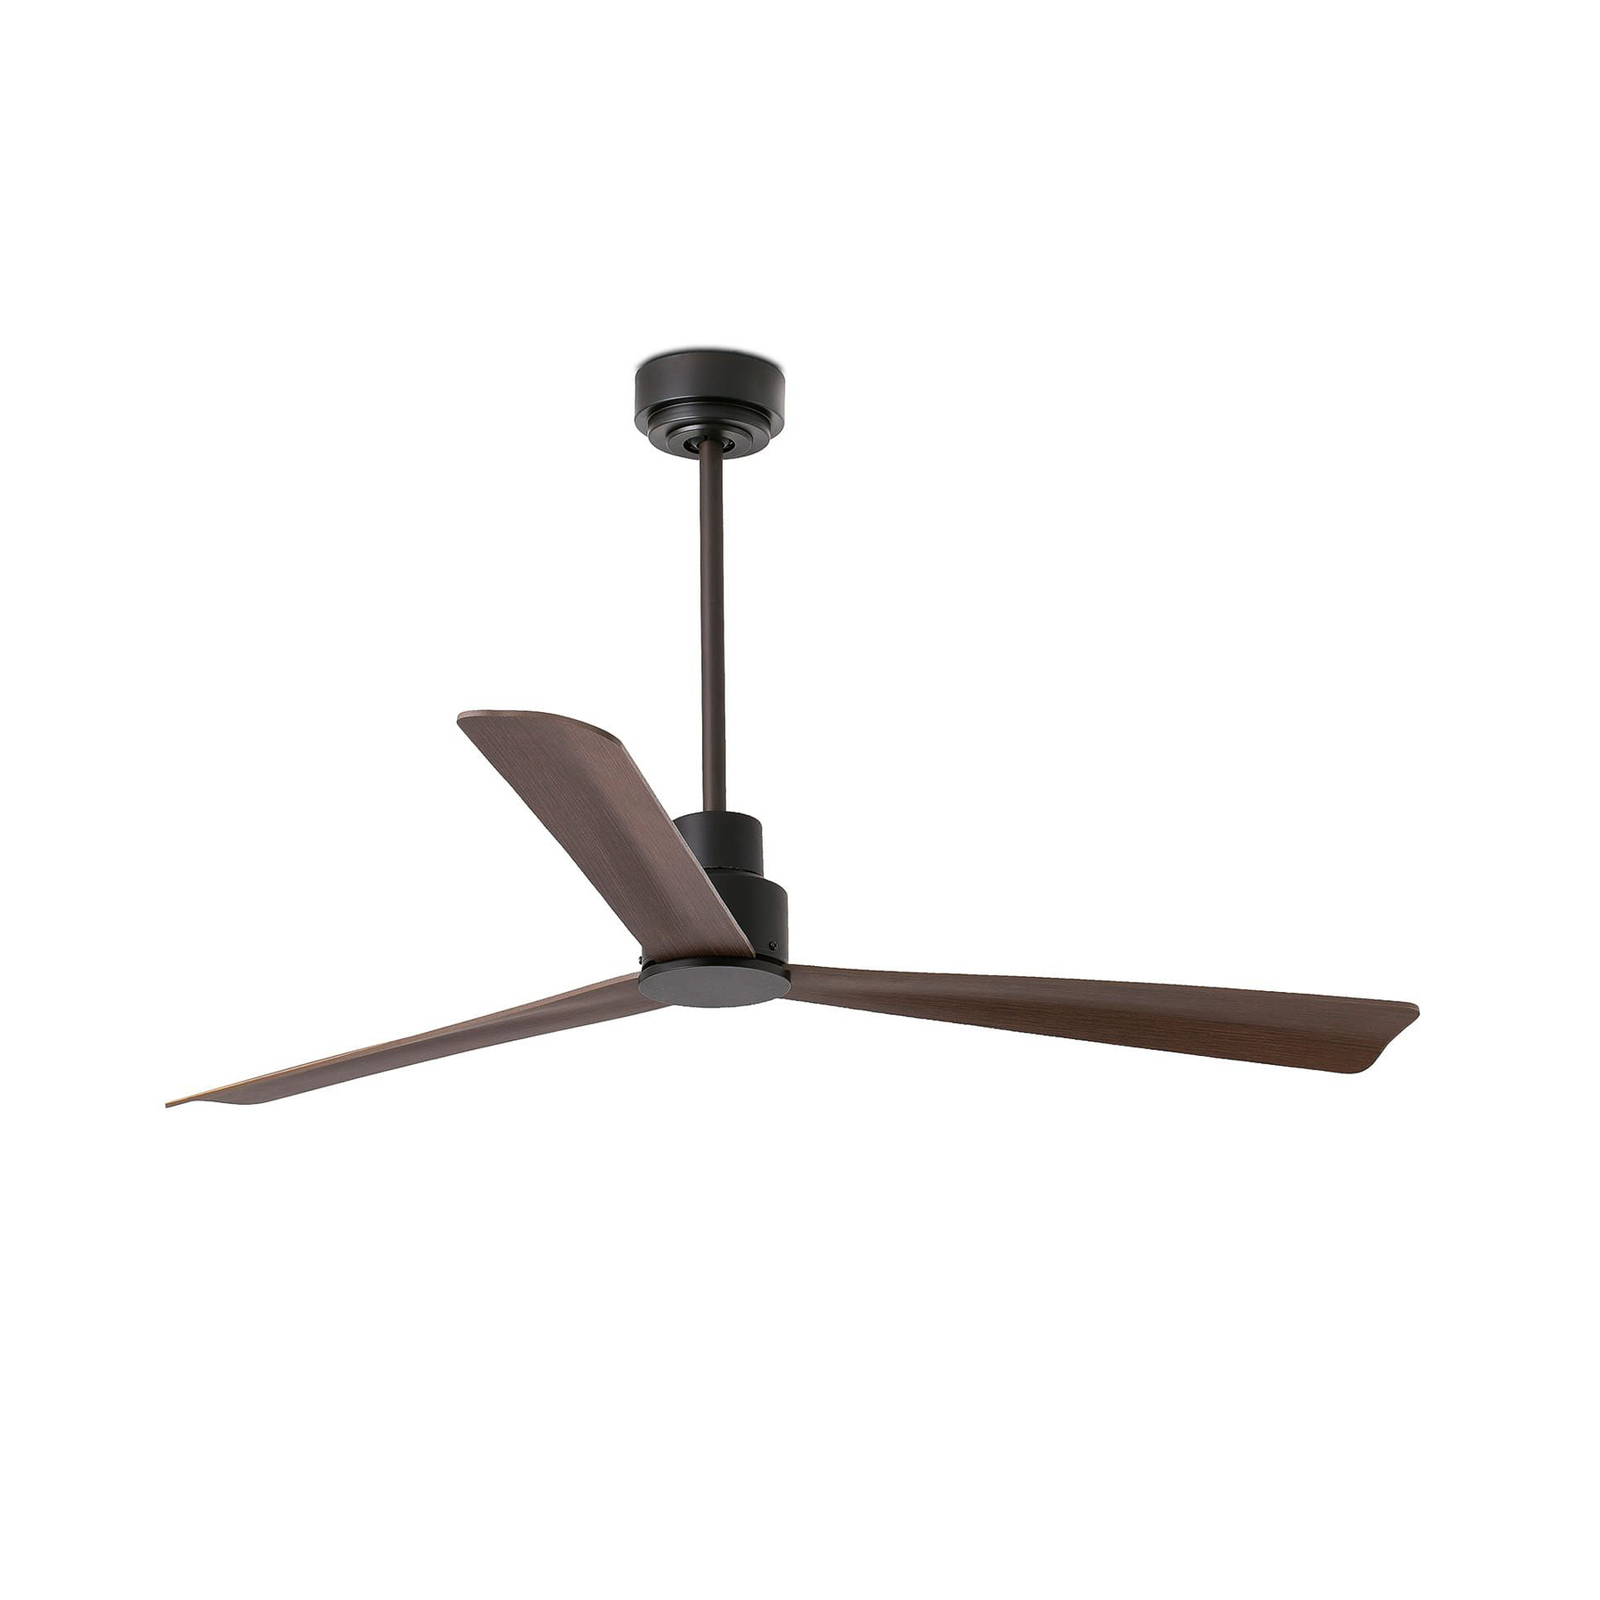 Nassau ceiling fan, DC, 3 blades, dark brown